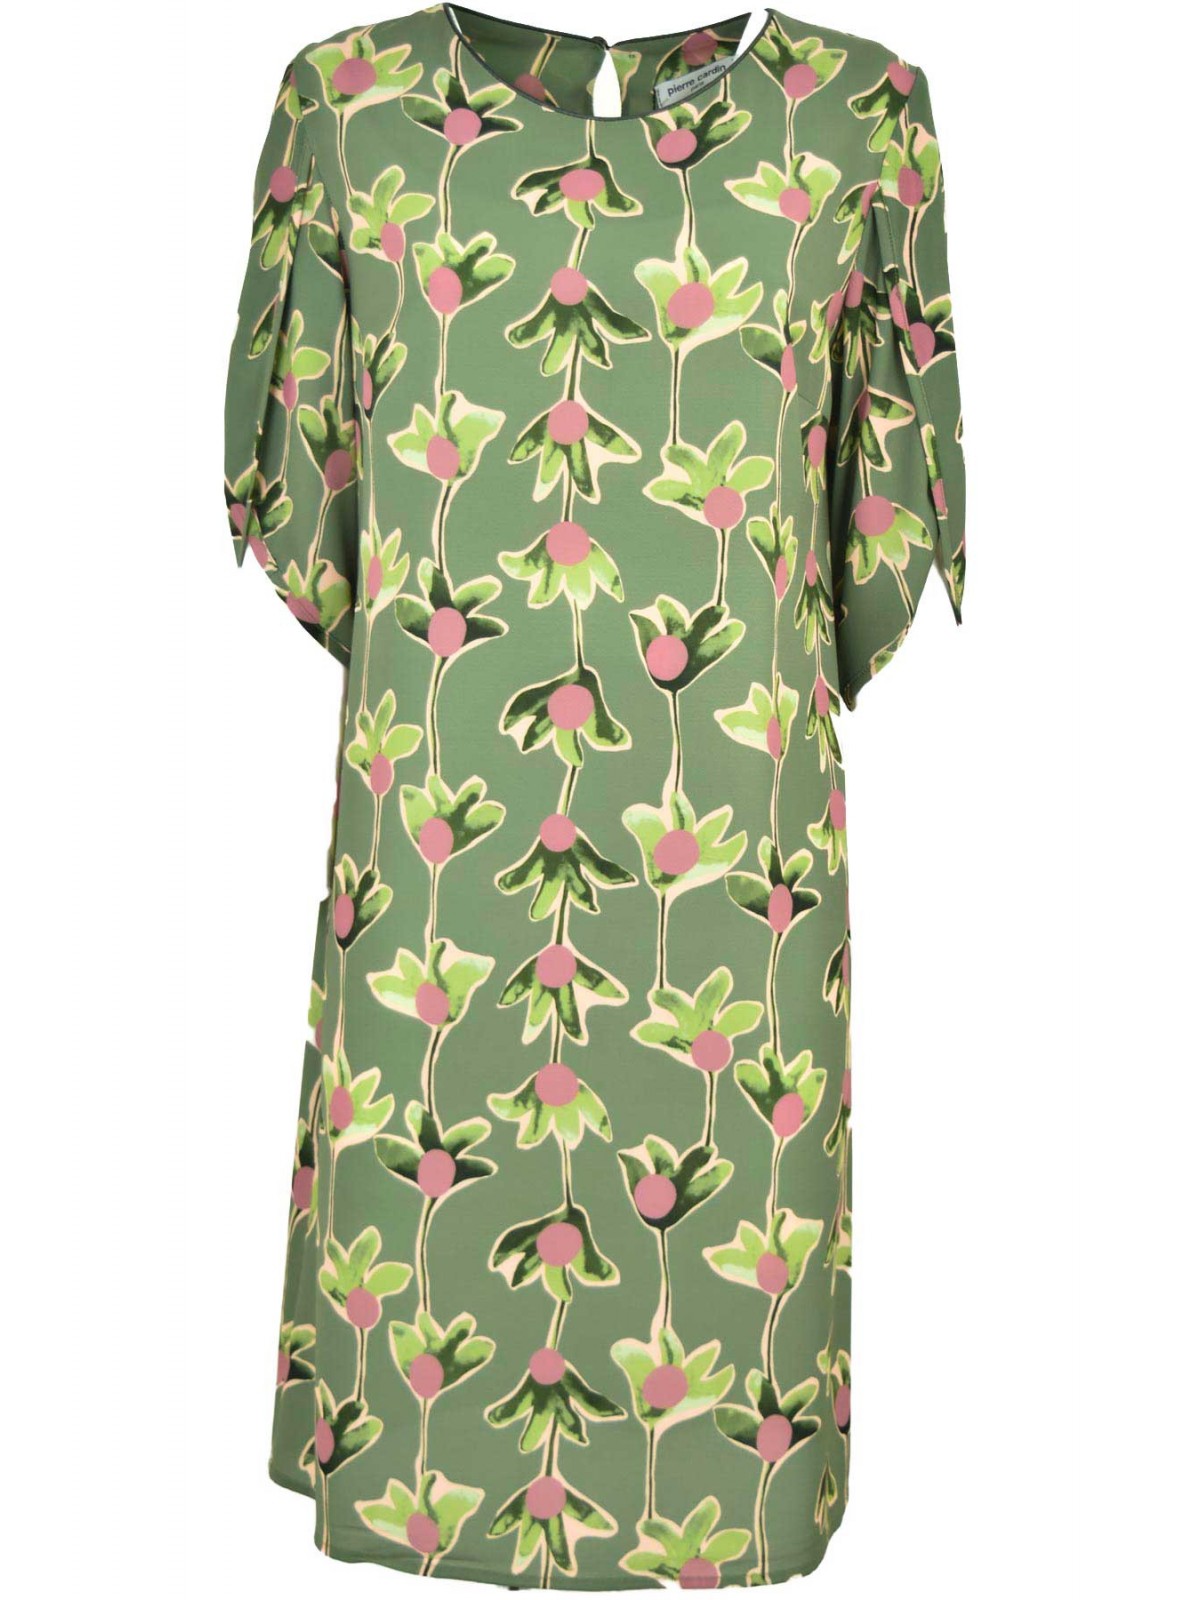 Vestido mujer diseño floral hasta la rodilla - Pierre Cardin